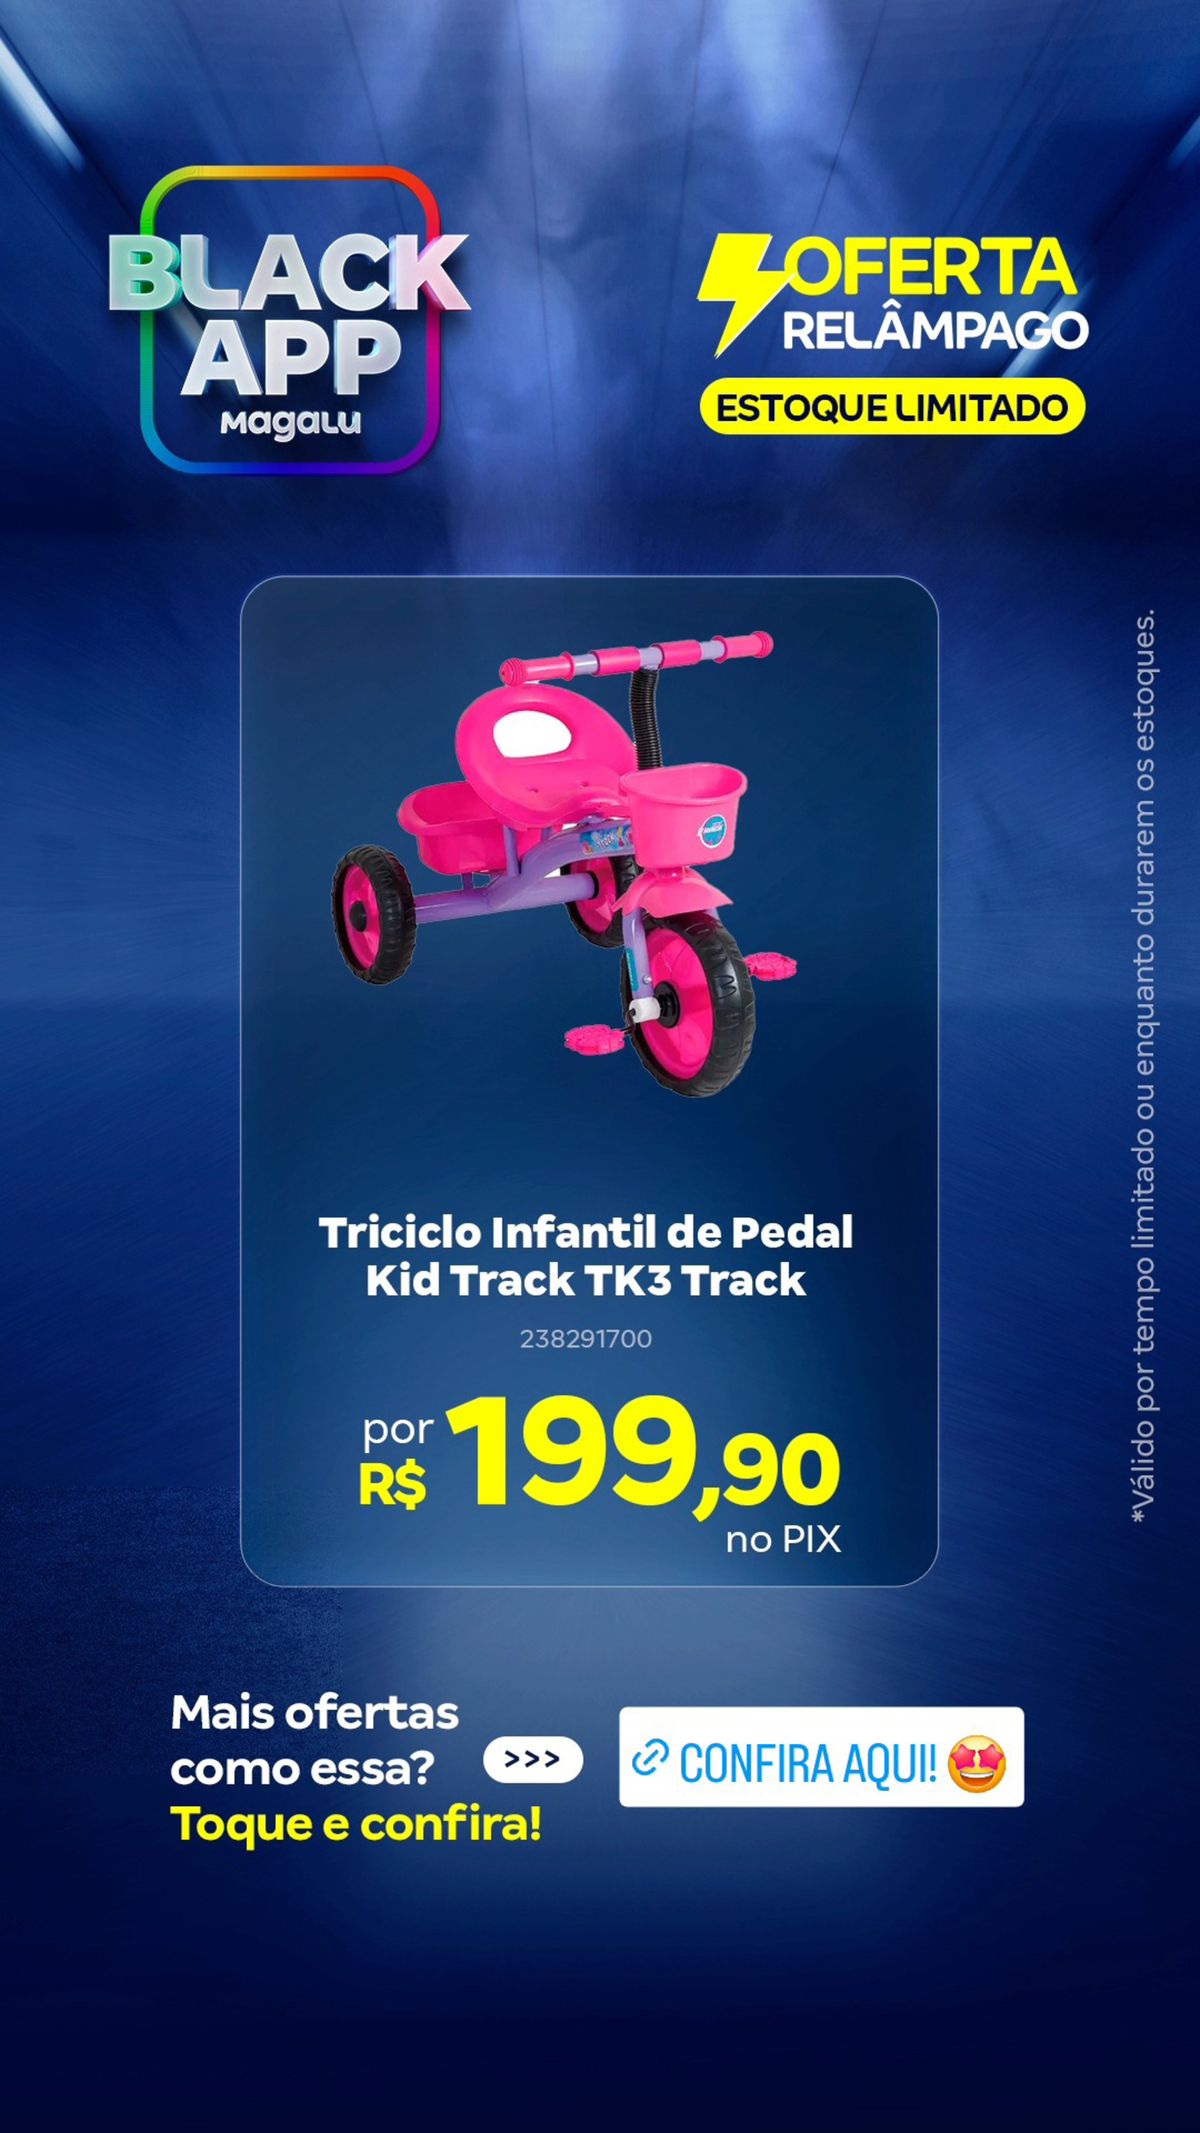 Triciclo Infantil de Pedal em promoção!